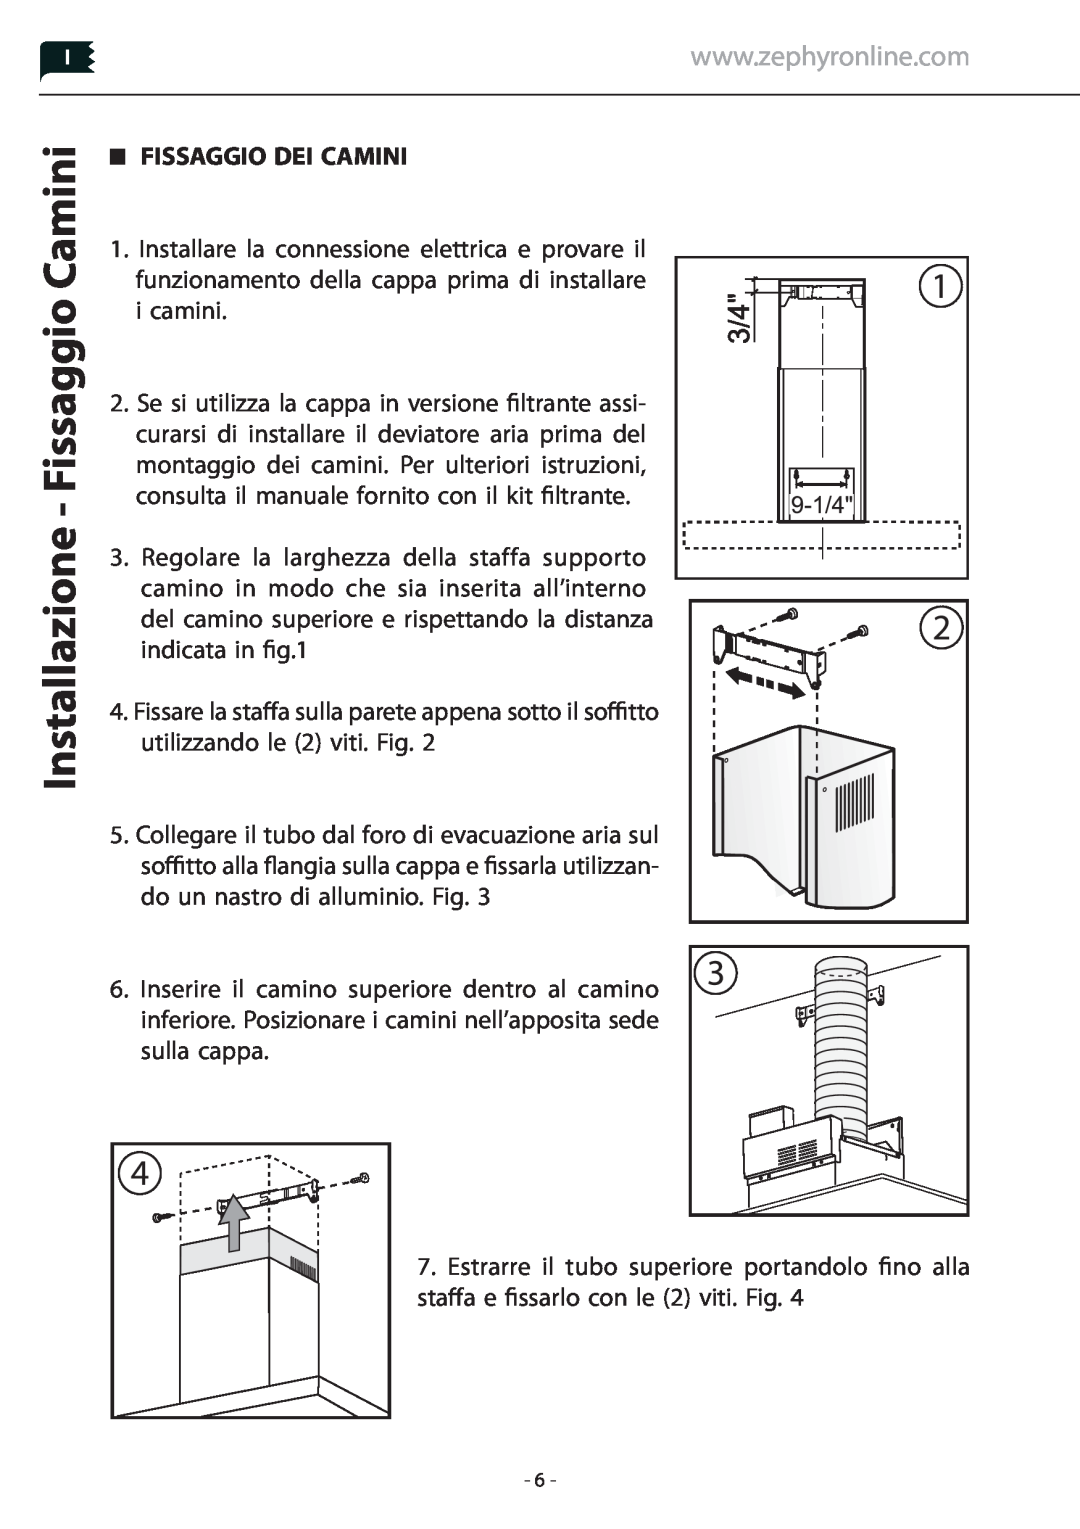 Zephyr Z1C-00LA manual Installazione - Fissaggio Camini, Fissaggio Dei Camini 